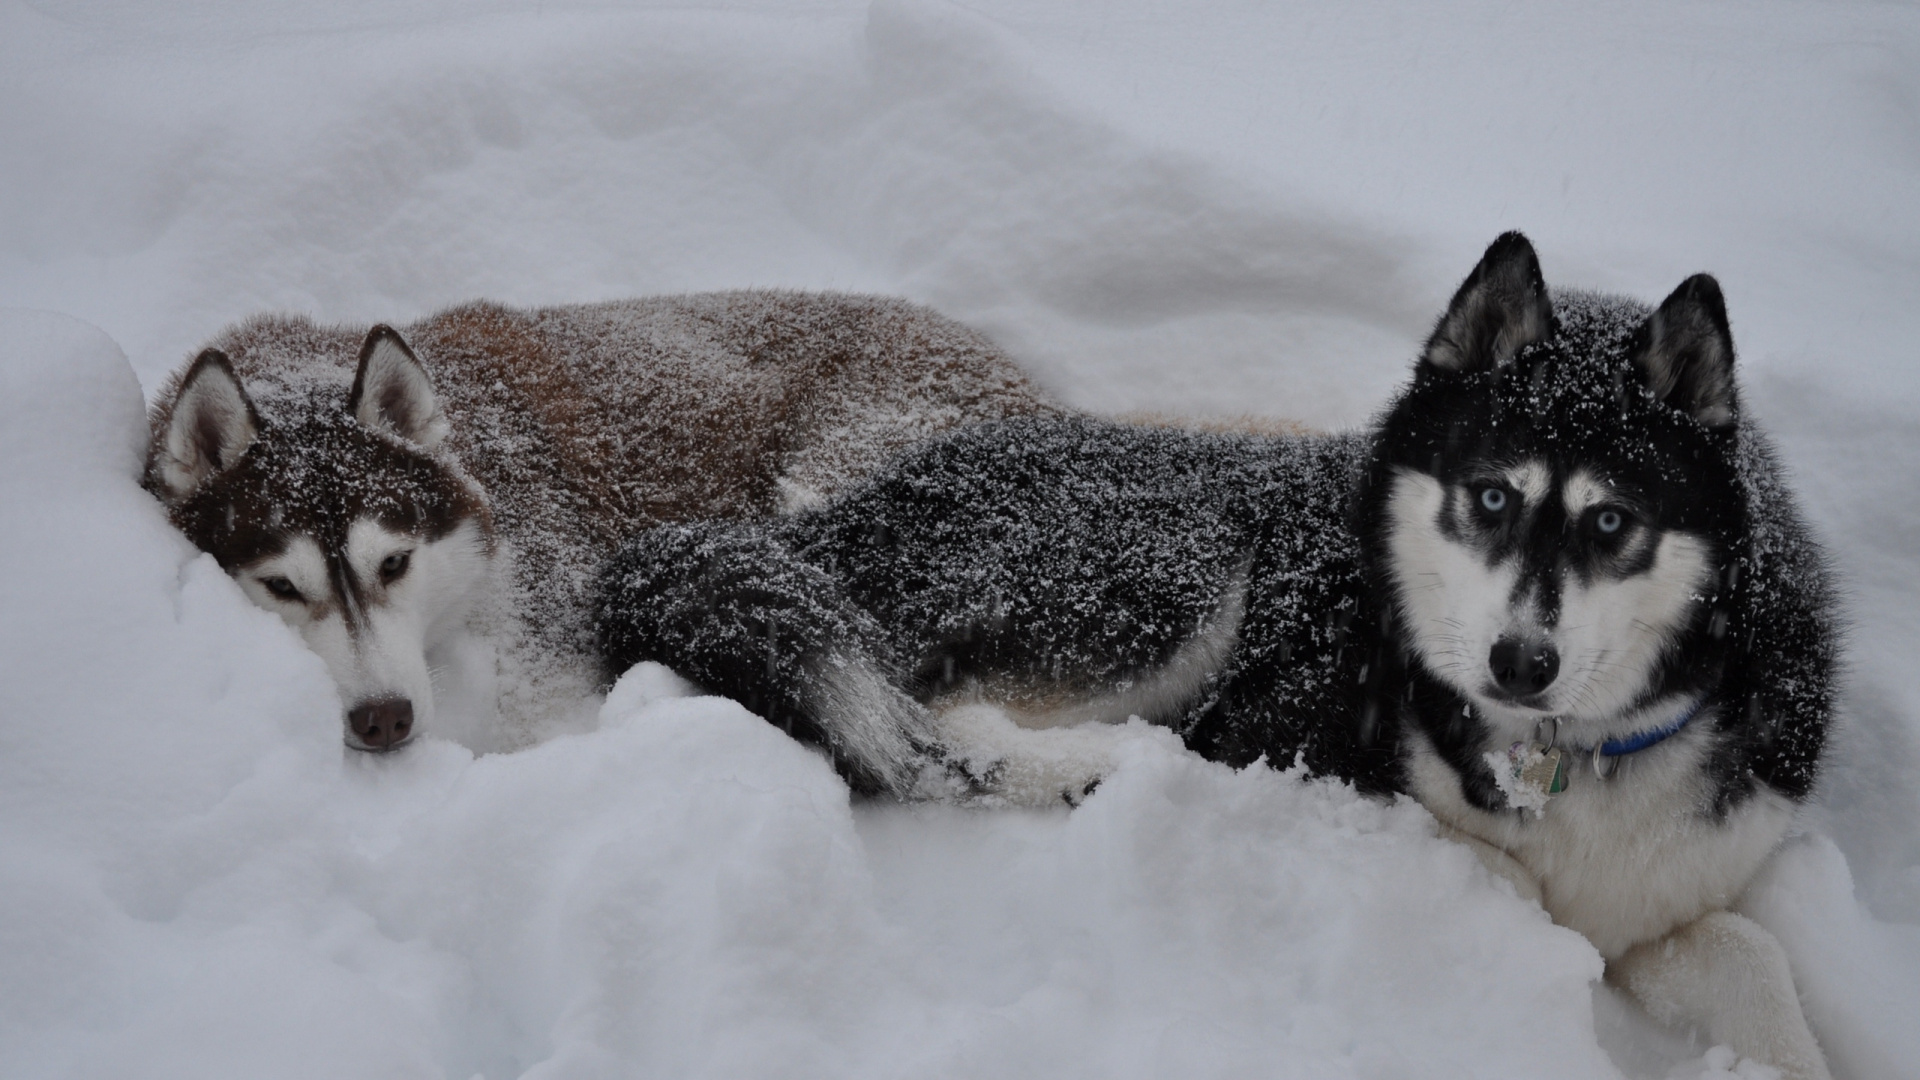 阿拉斯加雪橇犬, 赫斯基, 小狗, 萨哈林赫斯基, 雪橇狗 壁纸 1920x1080 允许